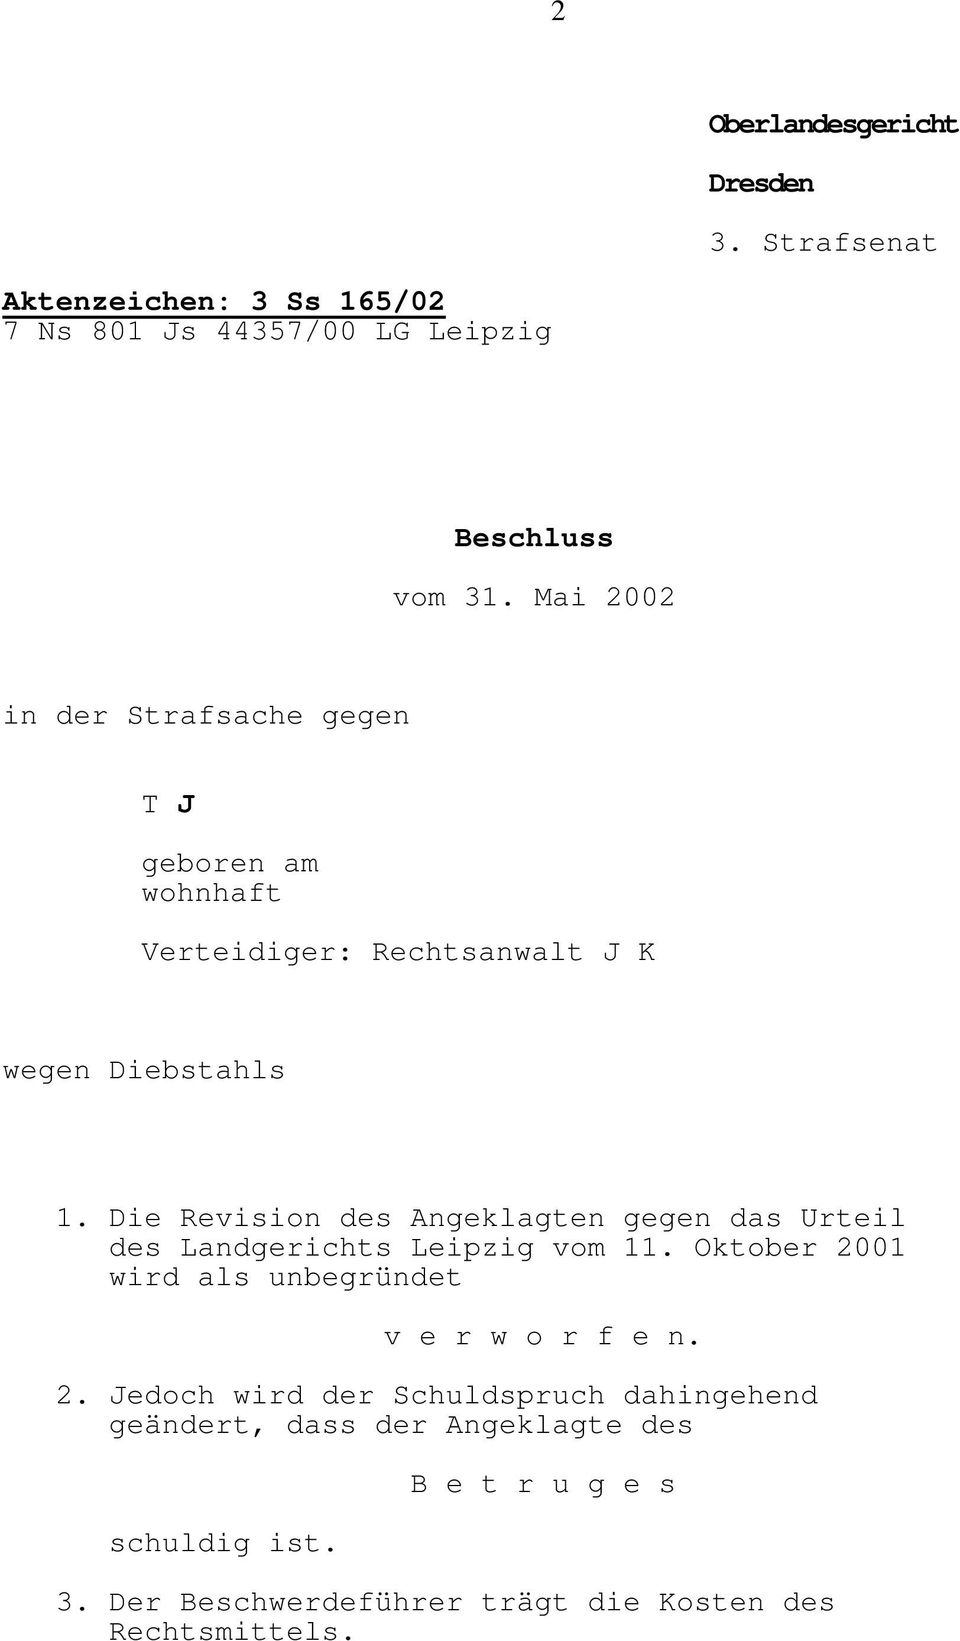 Die Revision des Angeklagten gegen das Urteil des Landgerichts Leipzig vom 11. Oktober 2001 wird als unbegründet v e r w o r f e n.